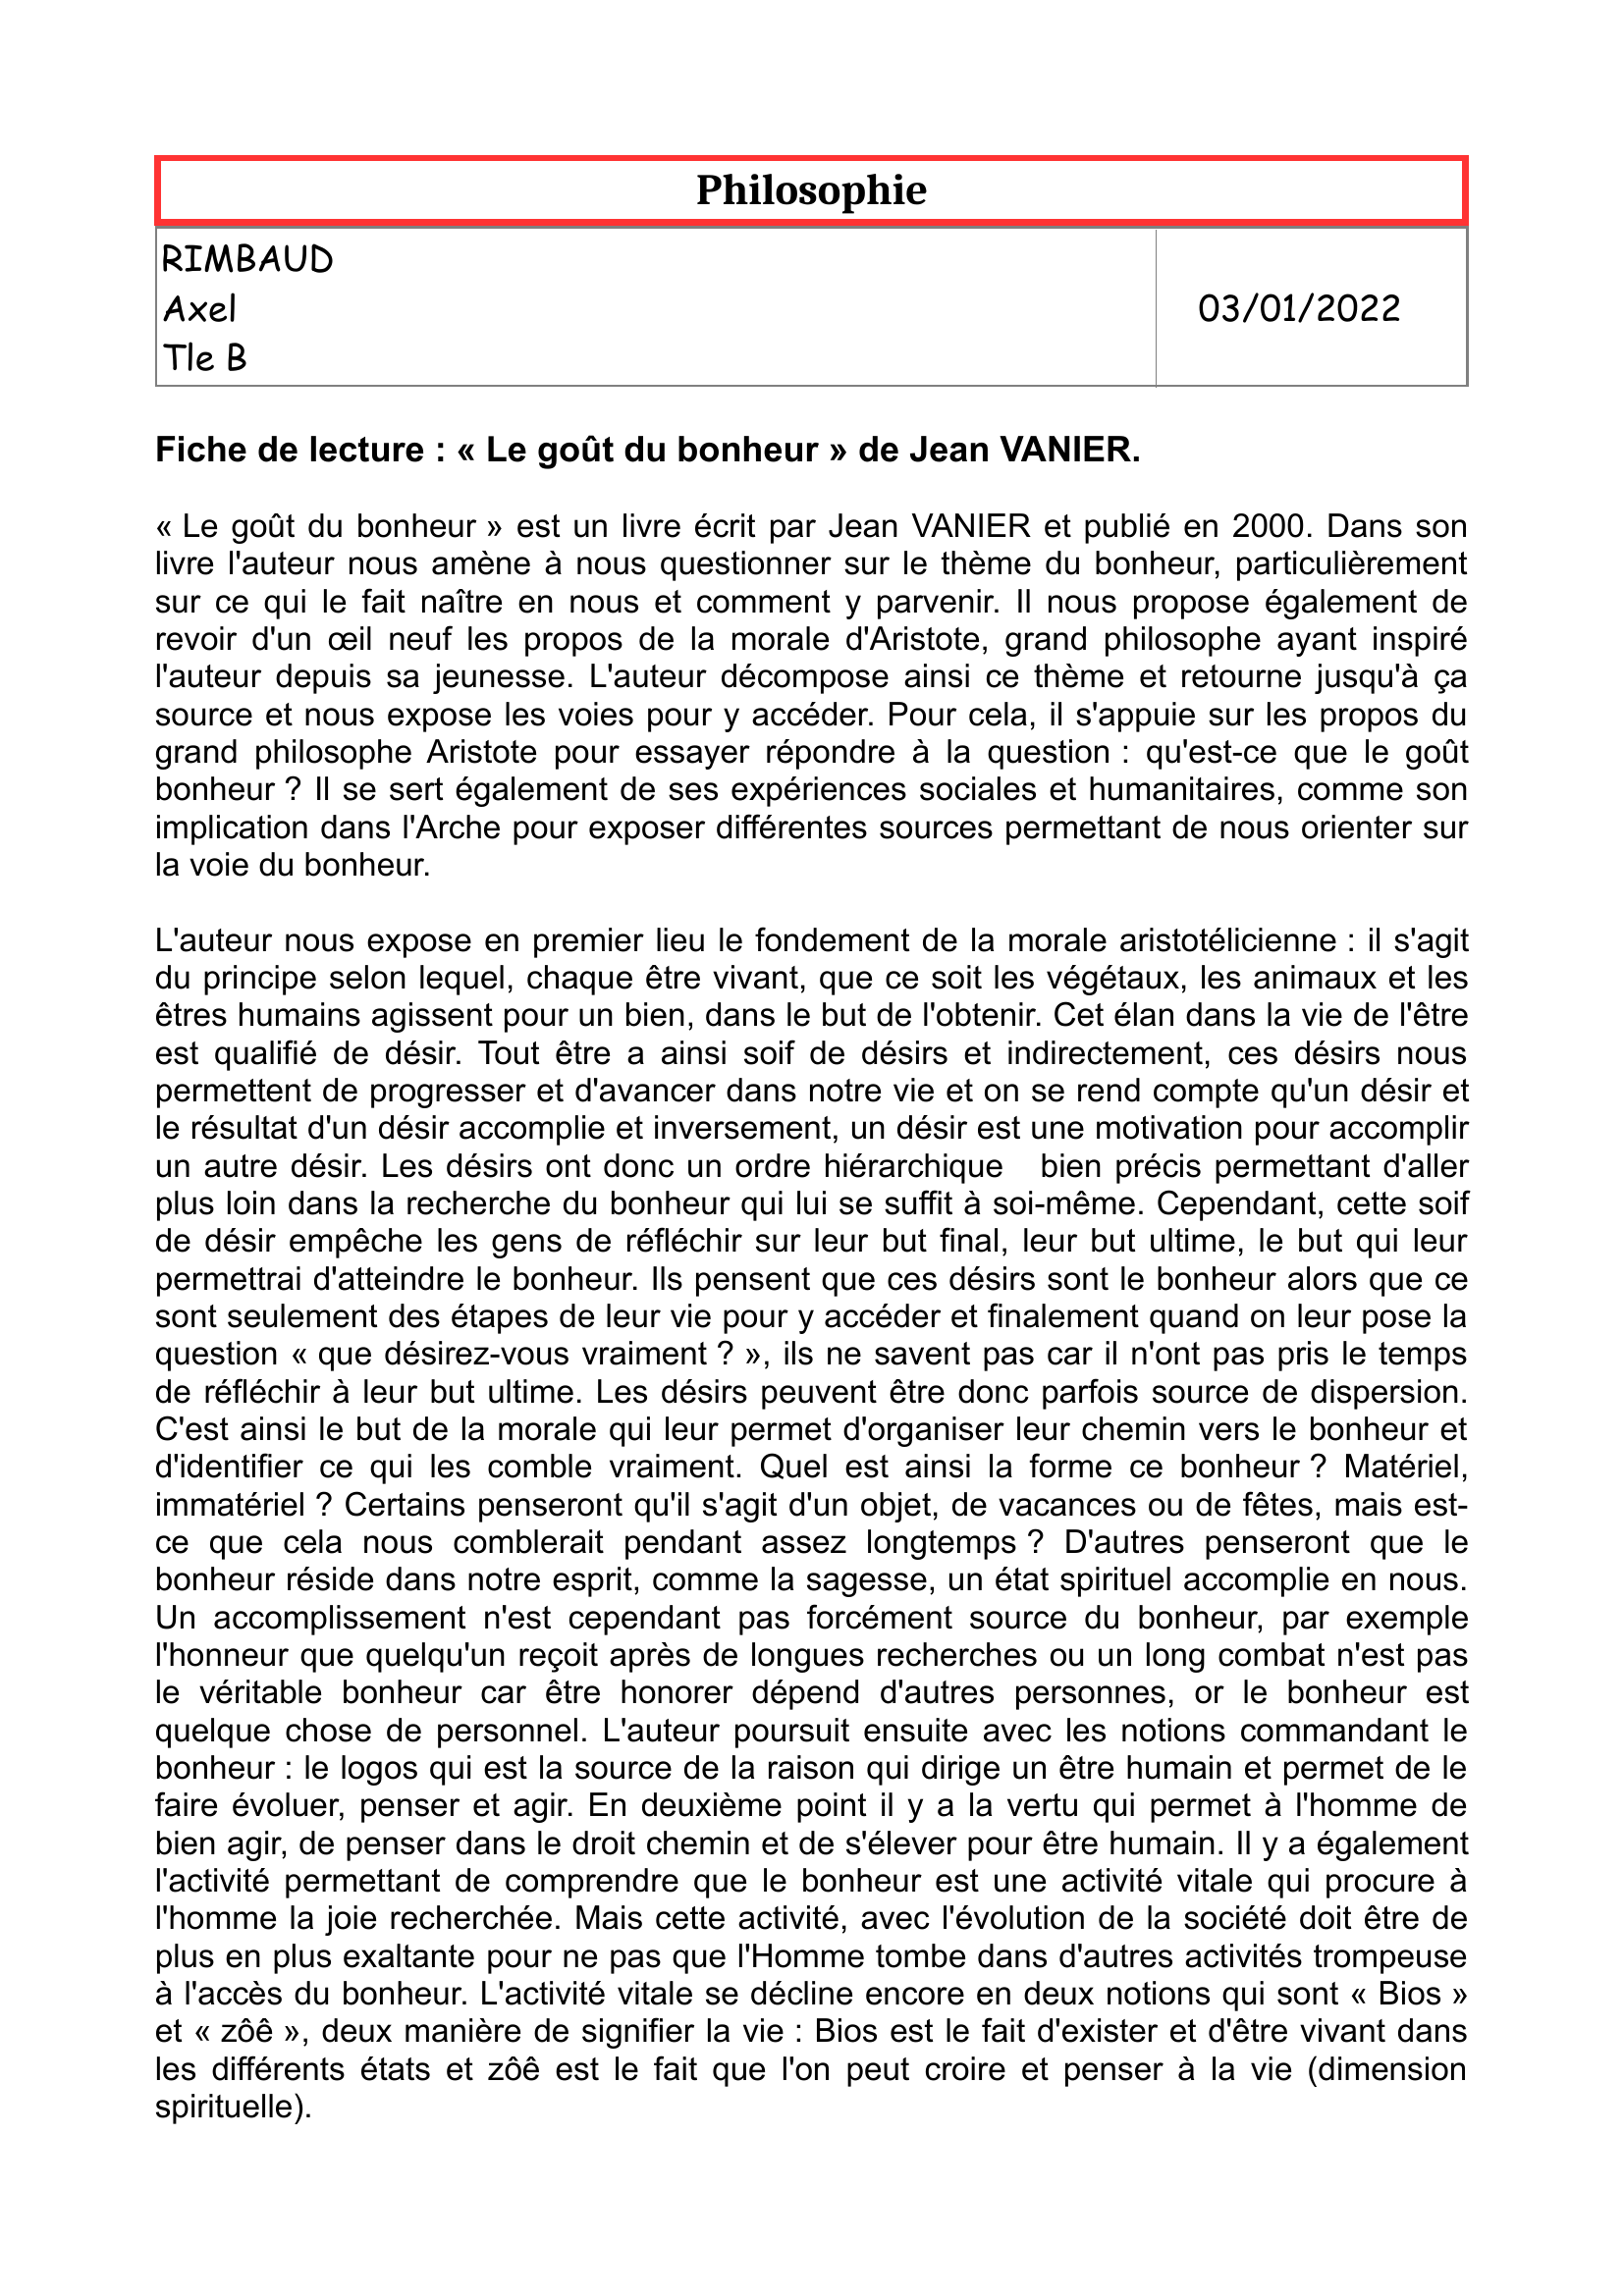 Prévisualisation du document philosophie "Le goût du bonheur" de Vanier